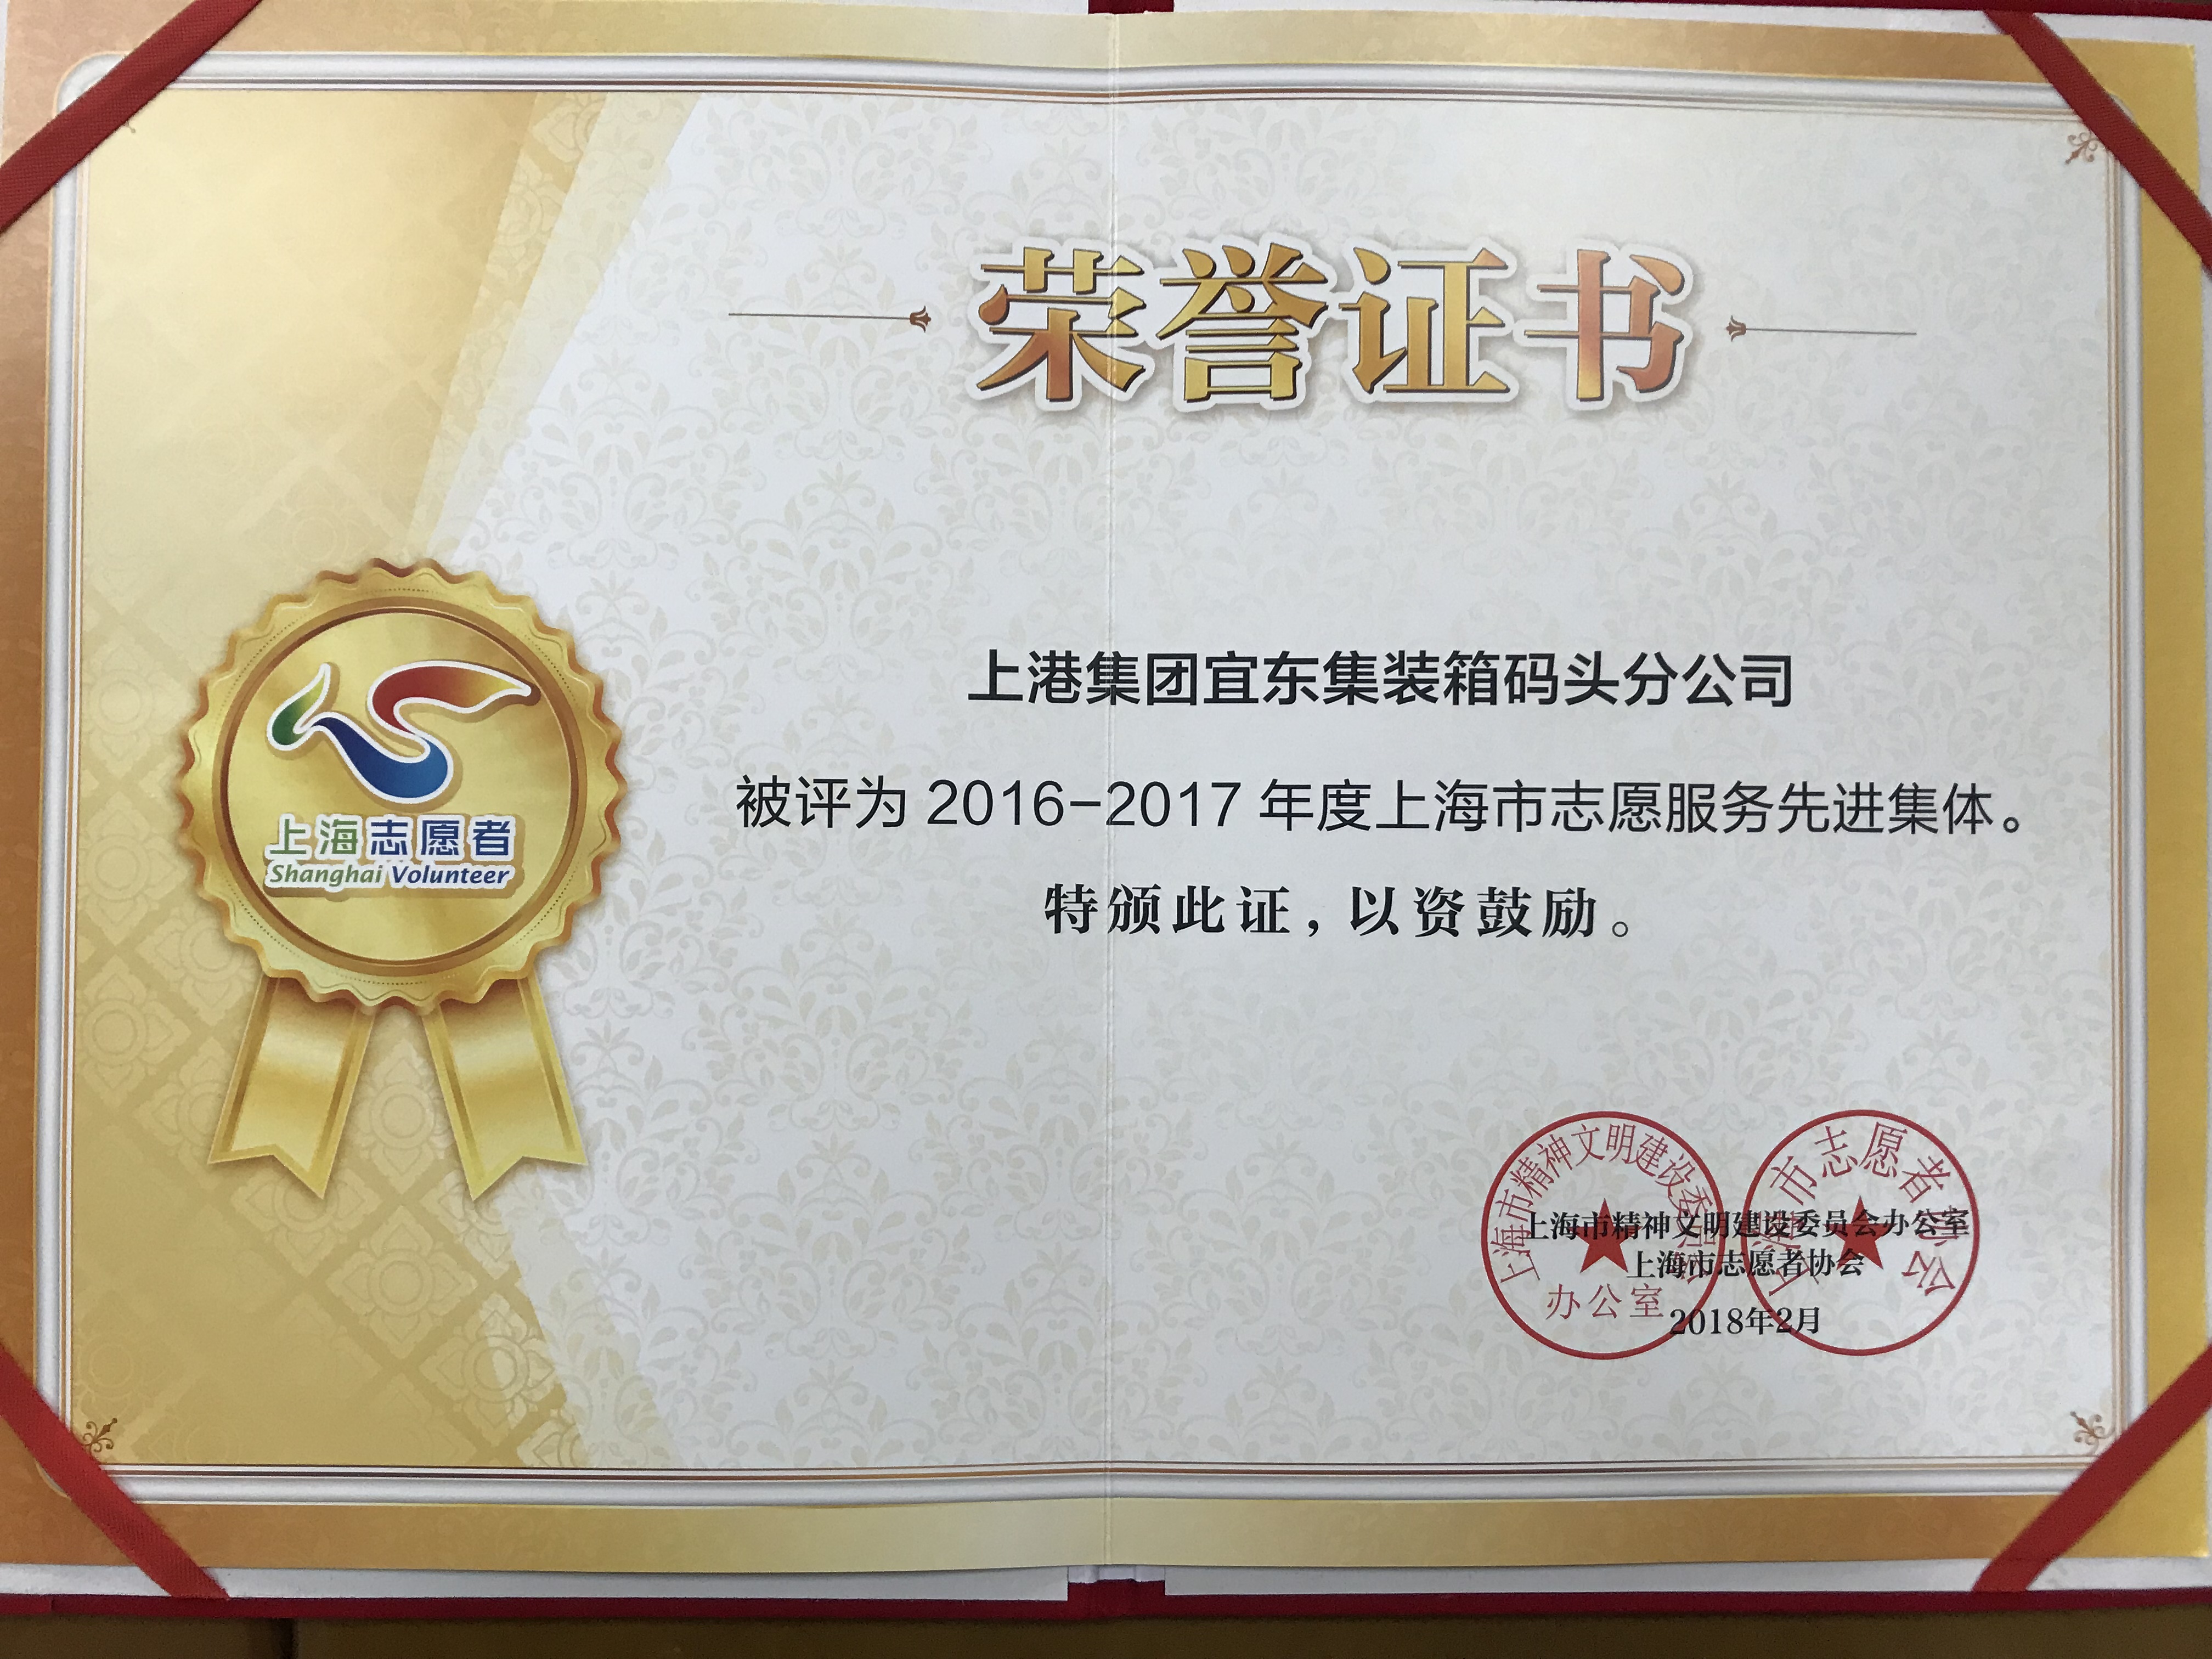 2016-2017年度上海市志愿者服务先进集体